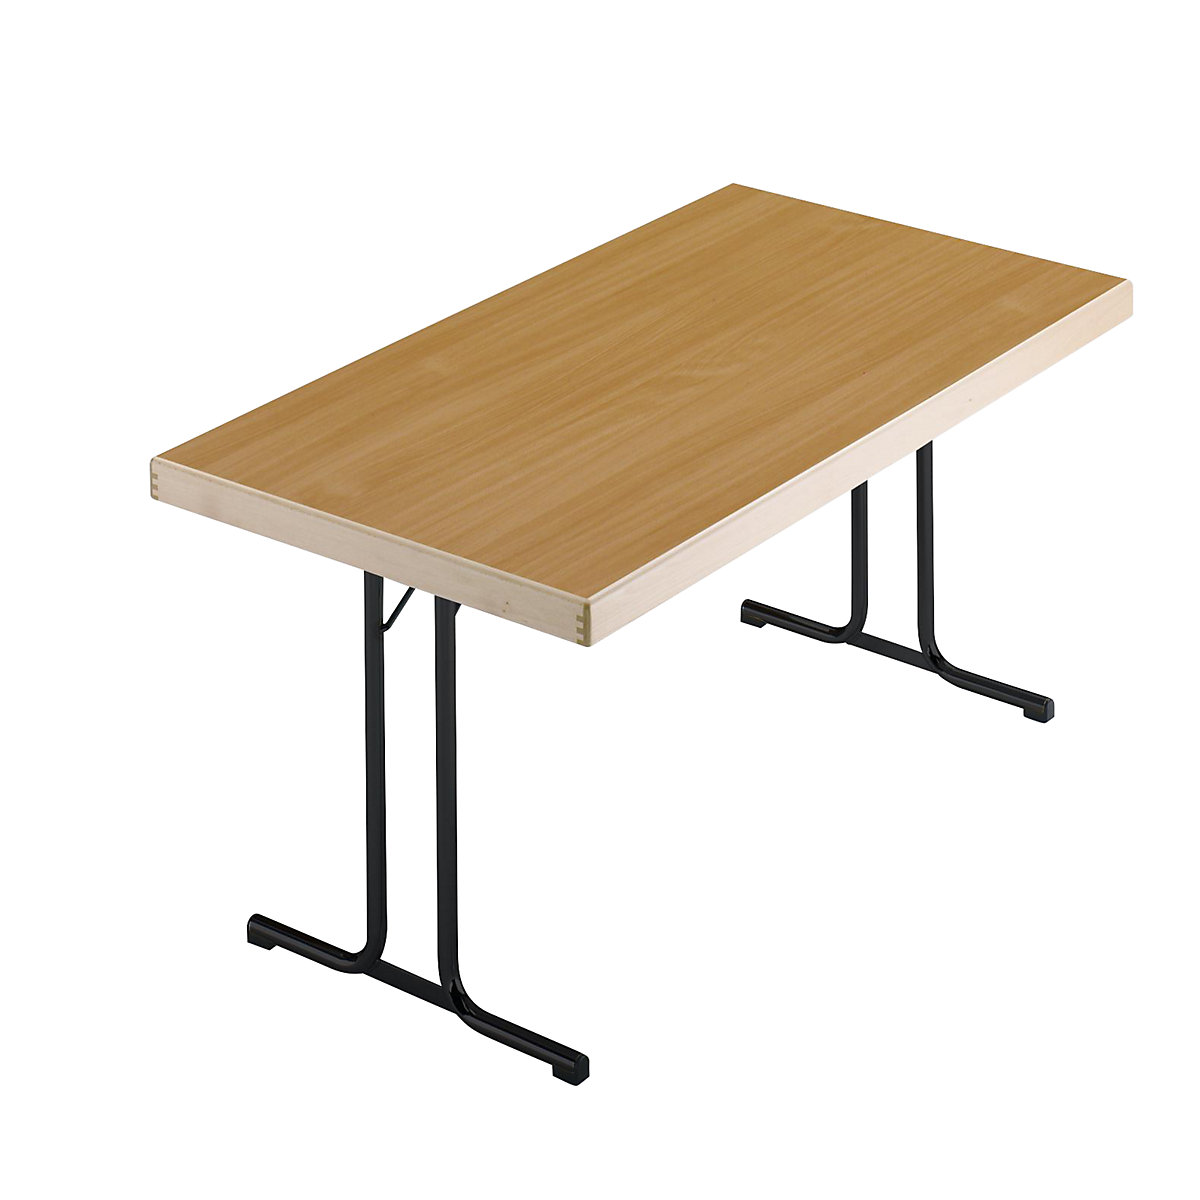 Sklopný stůl, podstavec s dvojitou T-nohou, 1200 x 800 mm, podstavec antracitový, deska bukový dekor-15